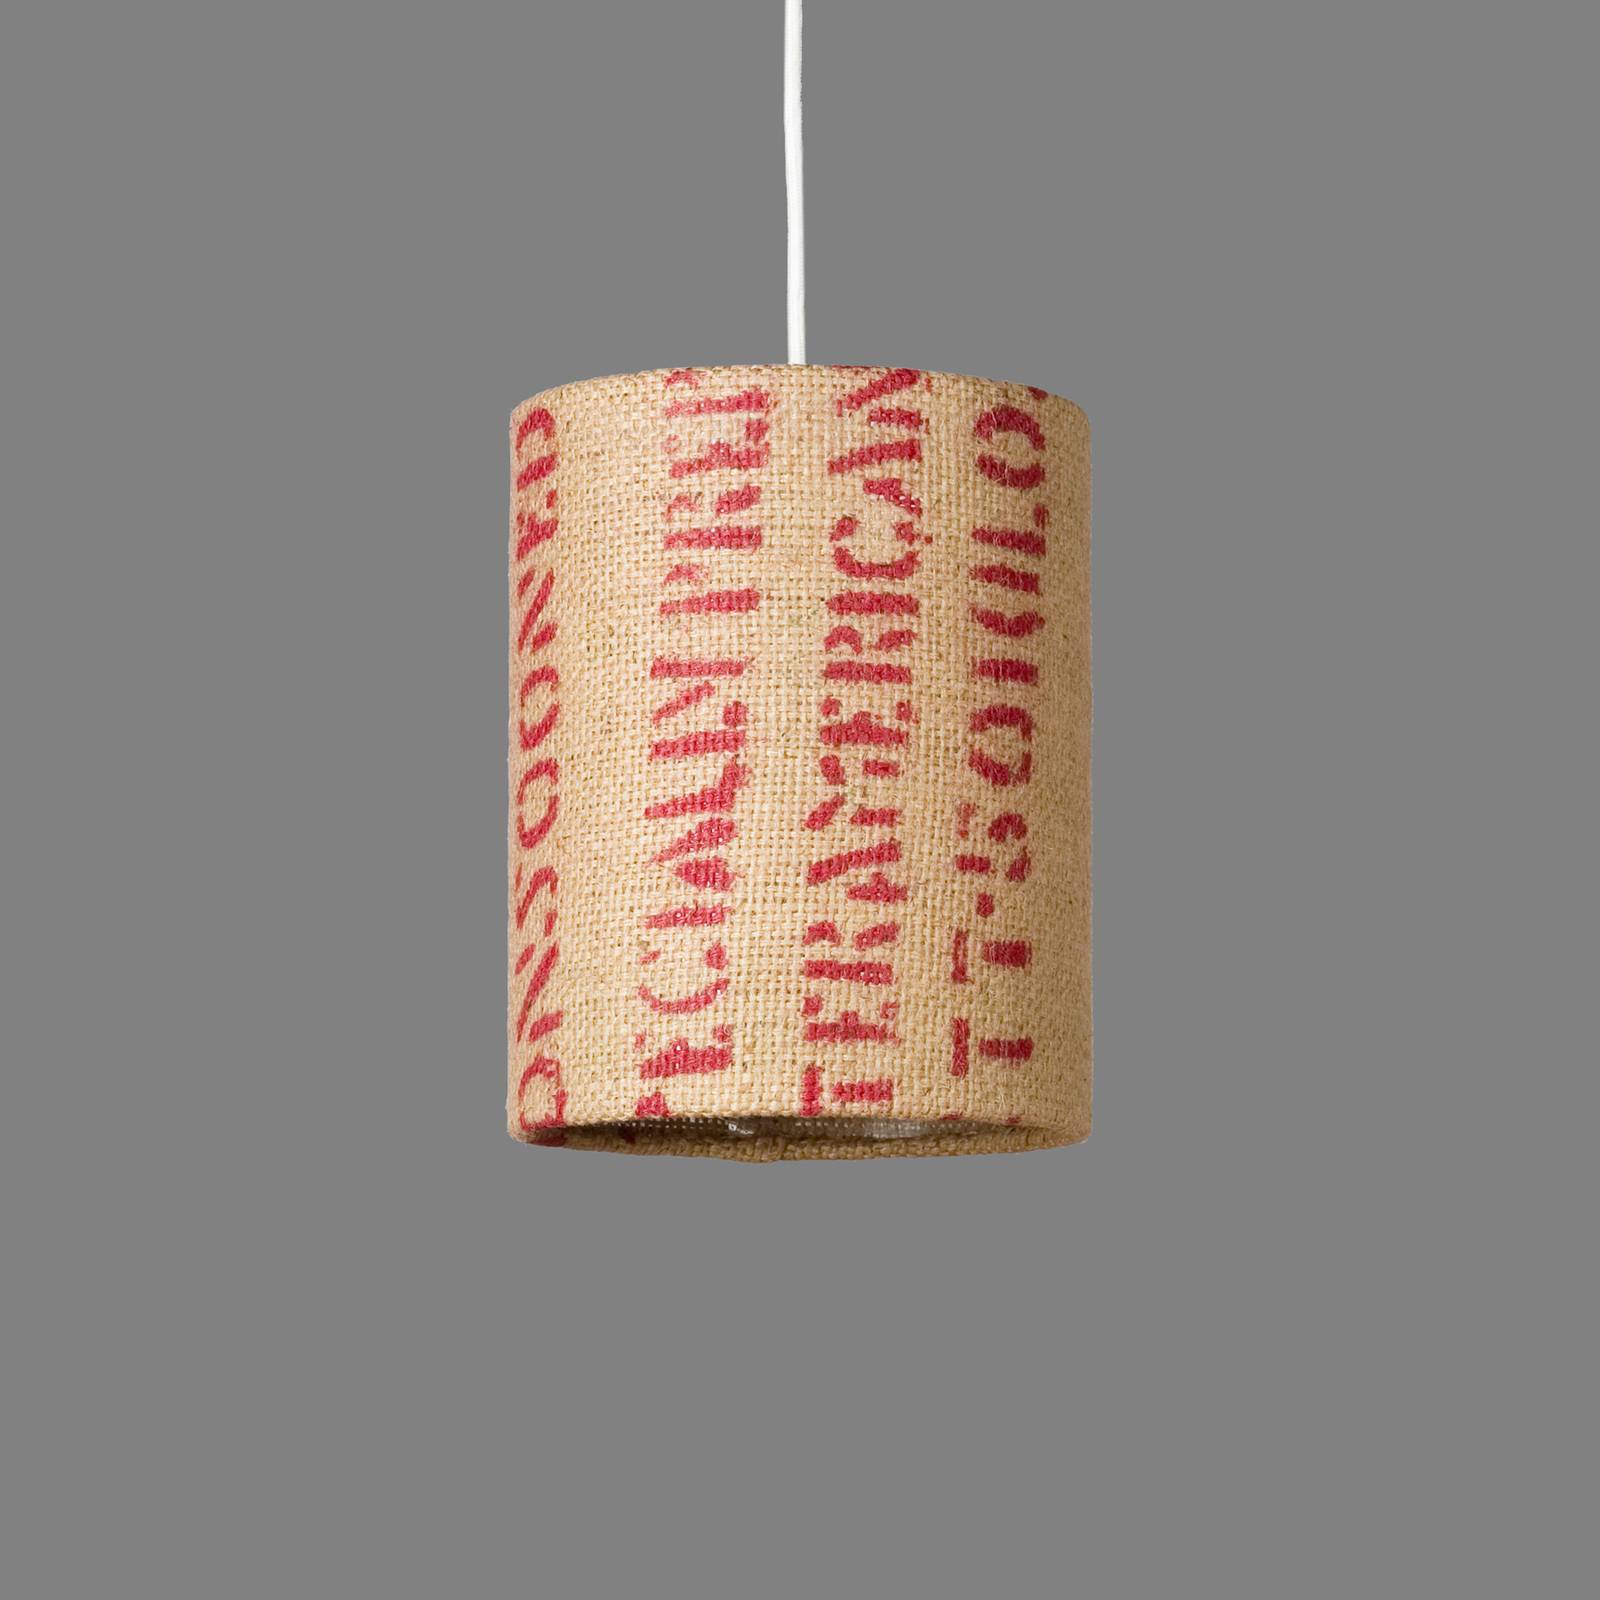 Lumbono lámpa n°71 perlbohne - kávézacskó ernyő